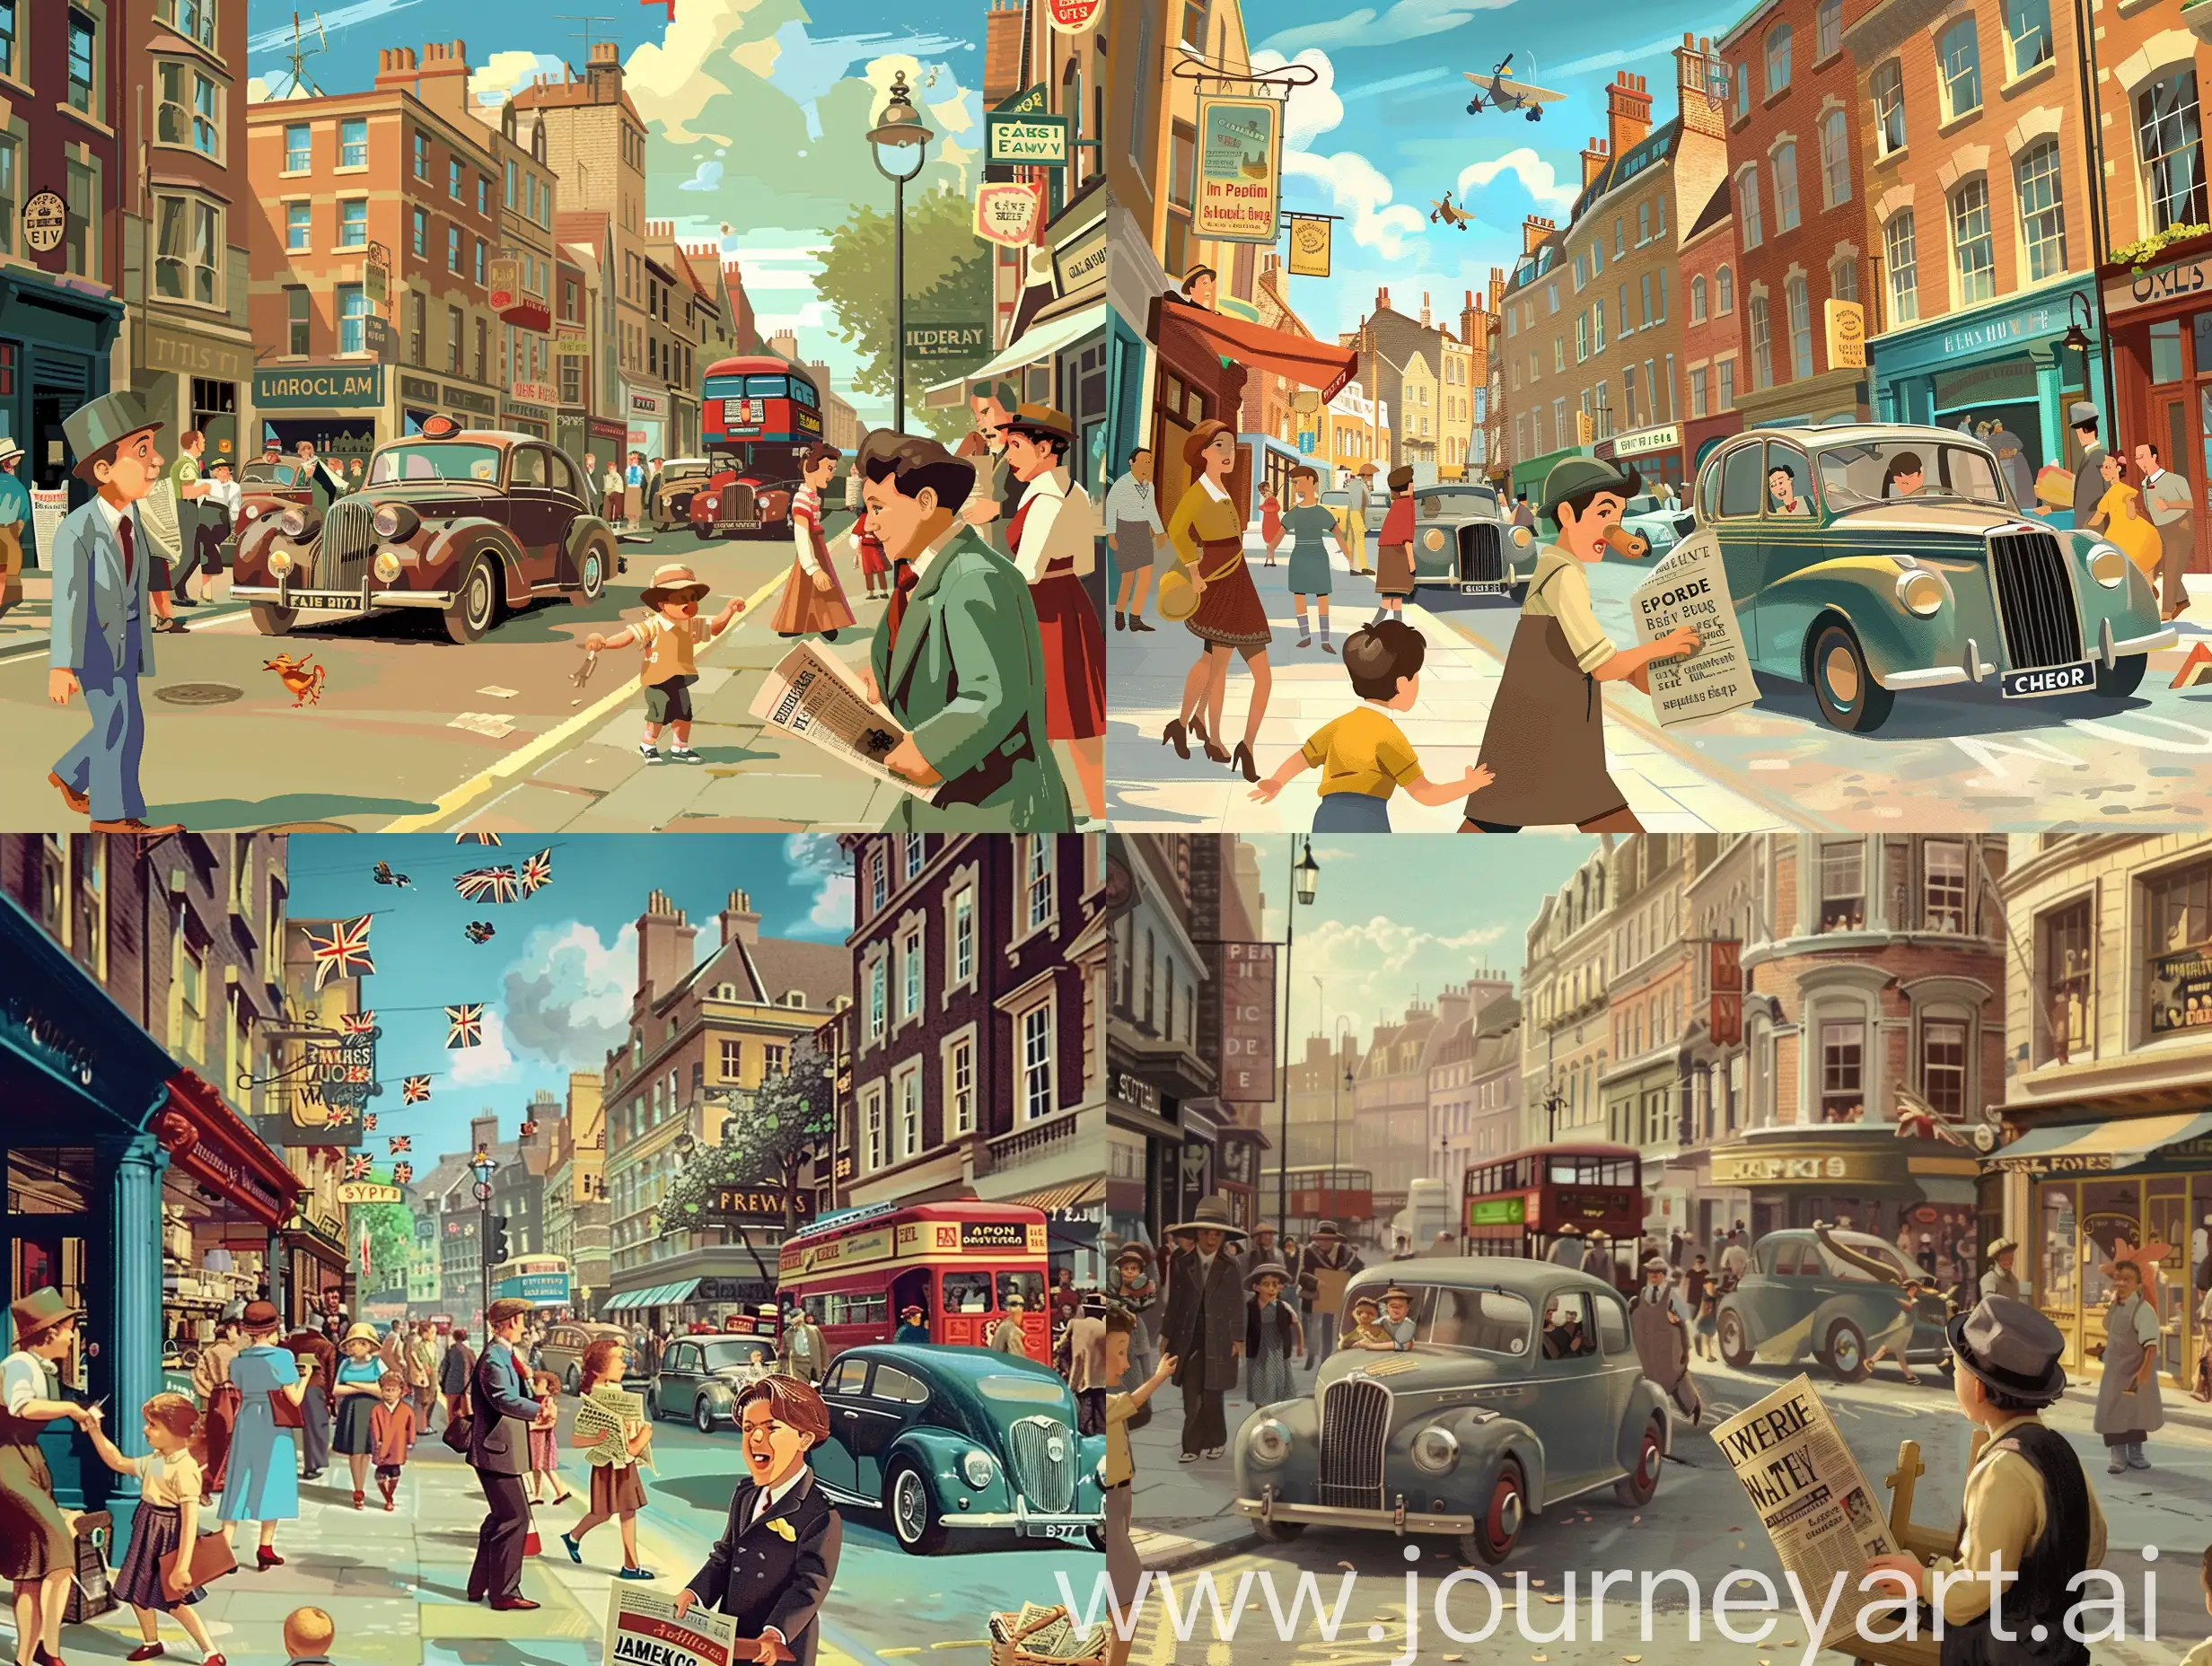 Rue achalandée de Londres des années 40, passants, voitures, magasins, enfants qui jouent, jeune crieur de  journaux en avant-plan, style animation